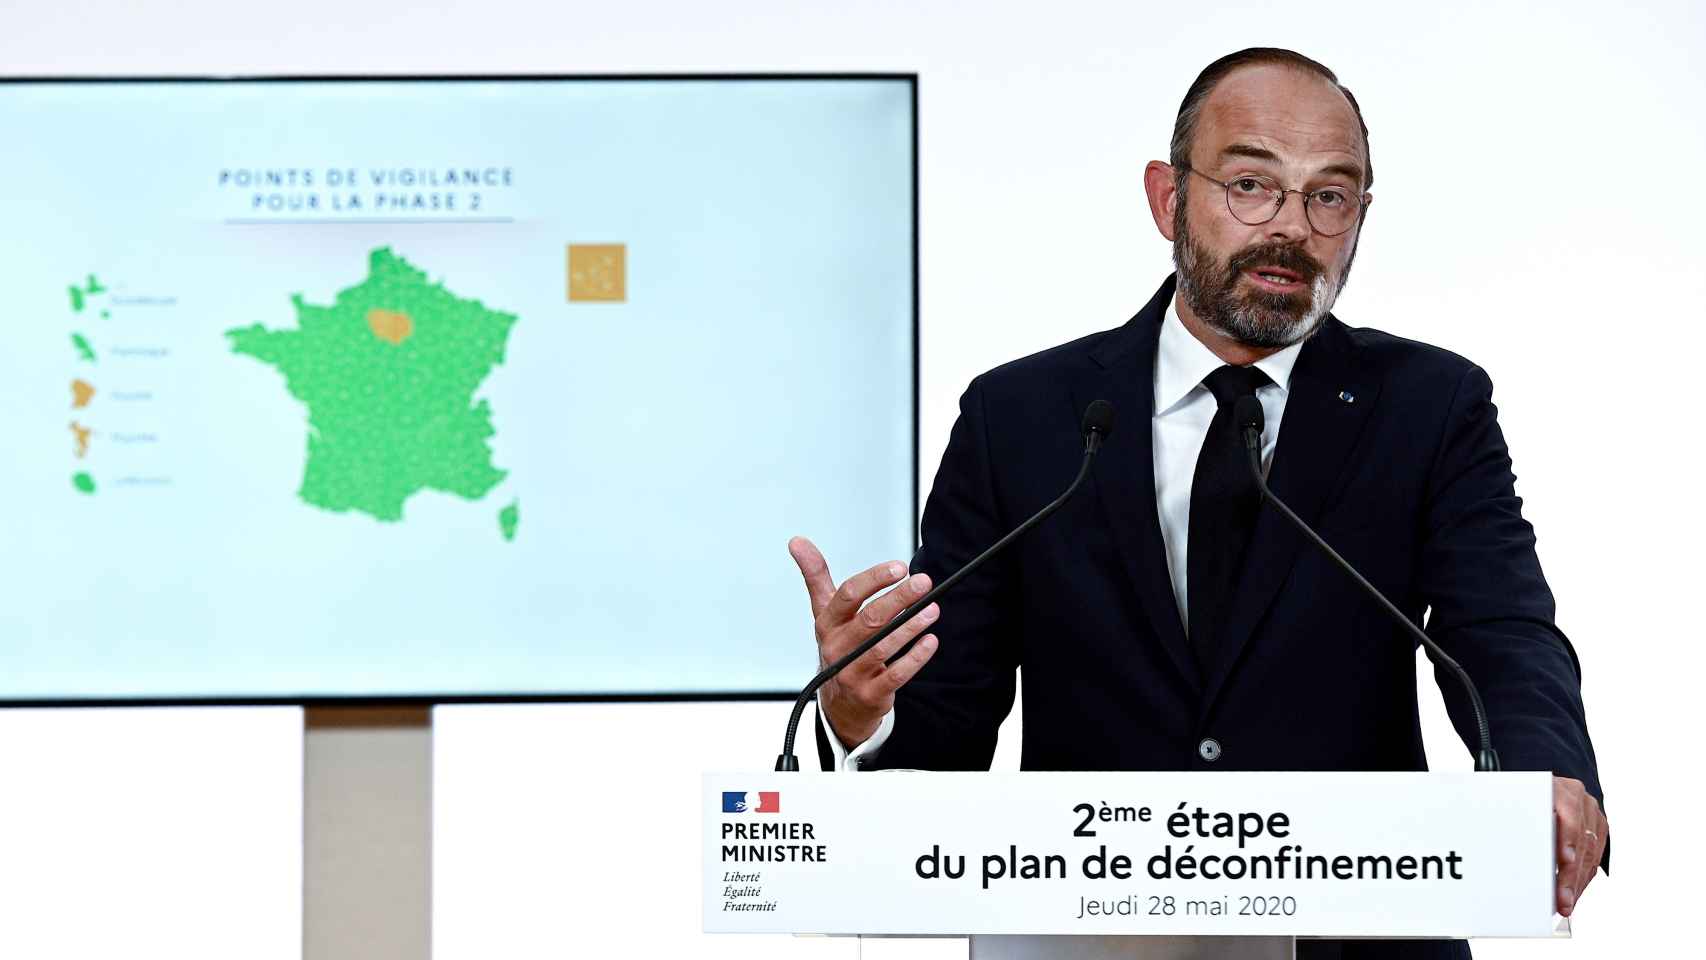 El primer ministro francés explica la evolución de la epidemia